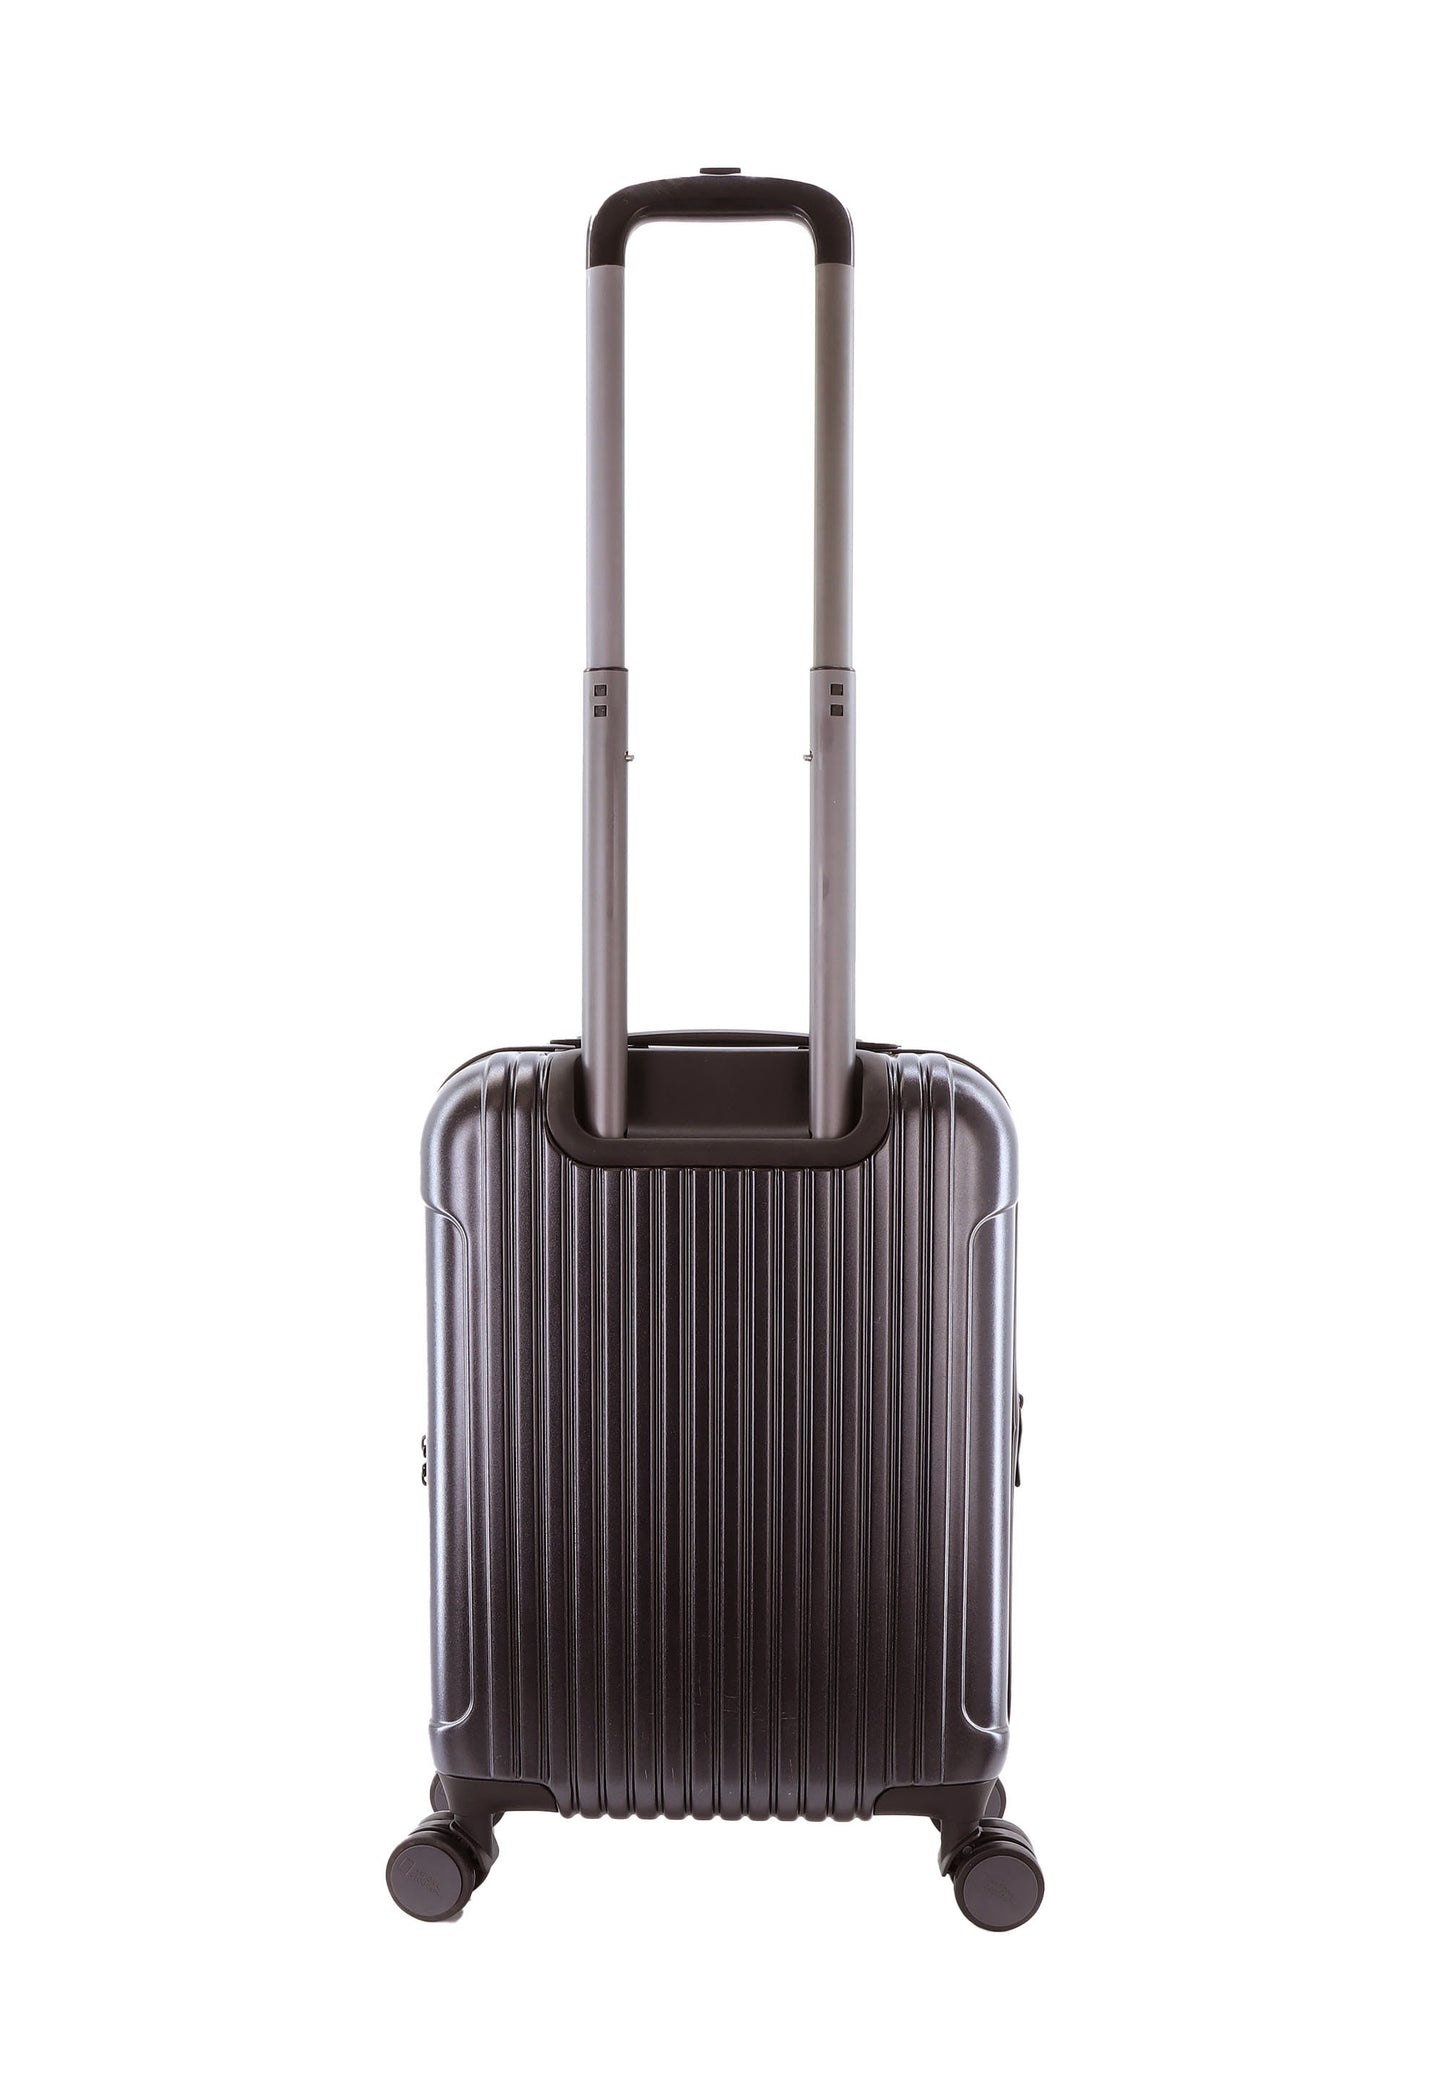 Valise rigide pour bagage à main National Geographic / Trolley / Valise de voyage - 55 cm (Petite) - Canyon - Boue métallique